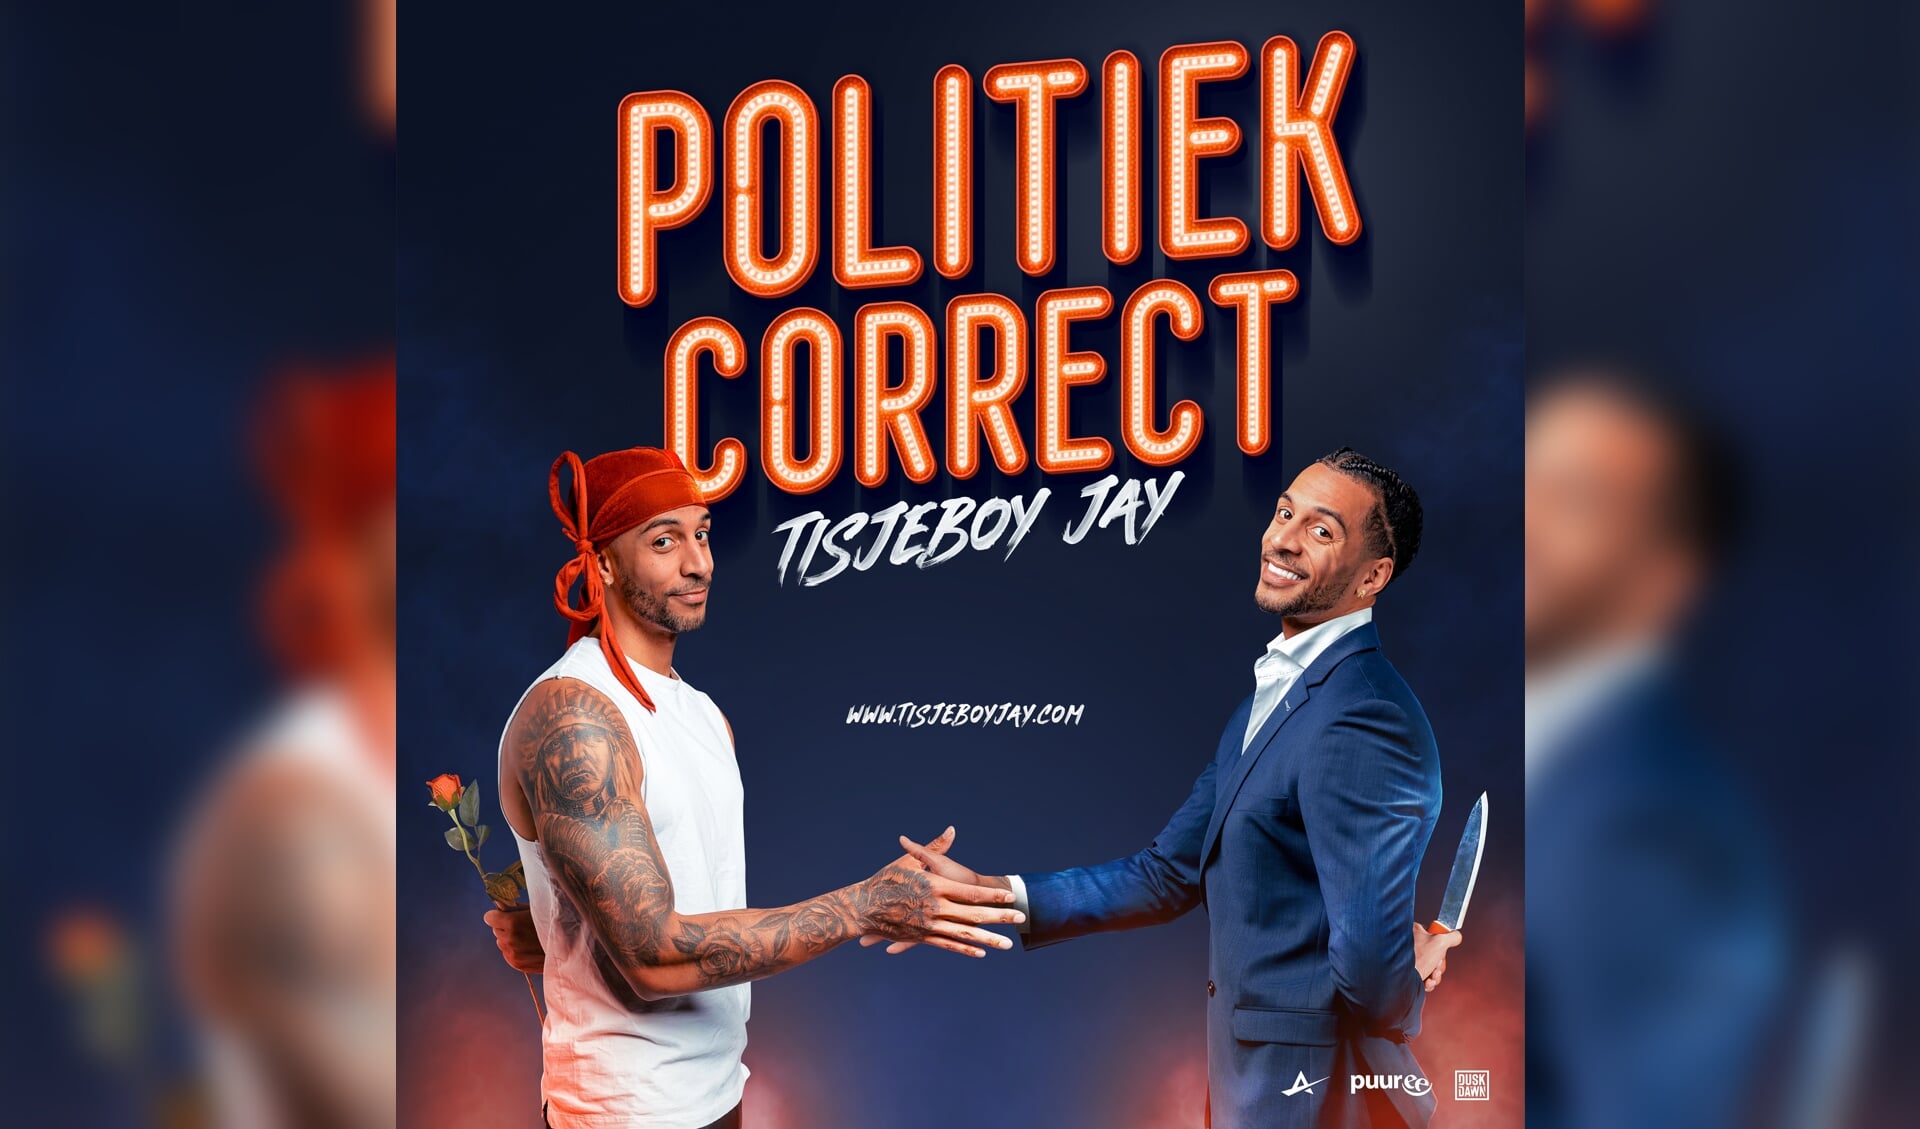 Politiek Correct, de nieuwe show van Tisjeboy Jay.